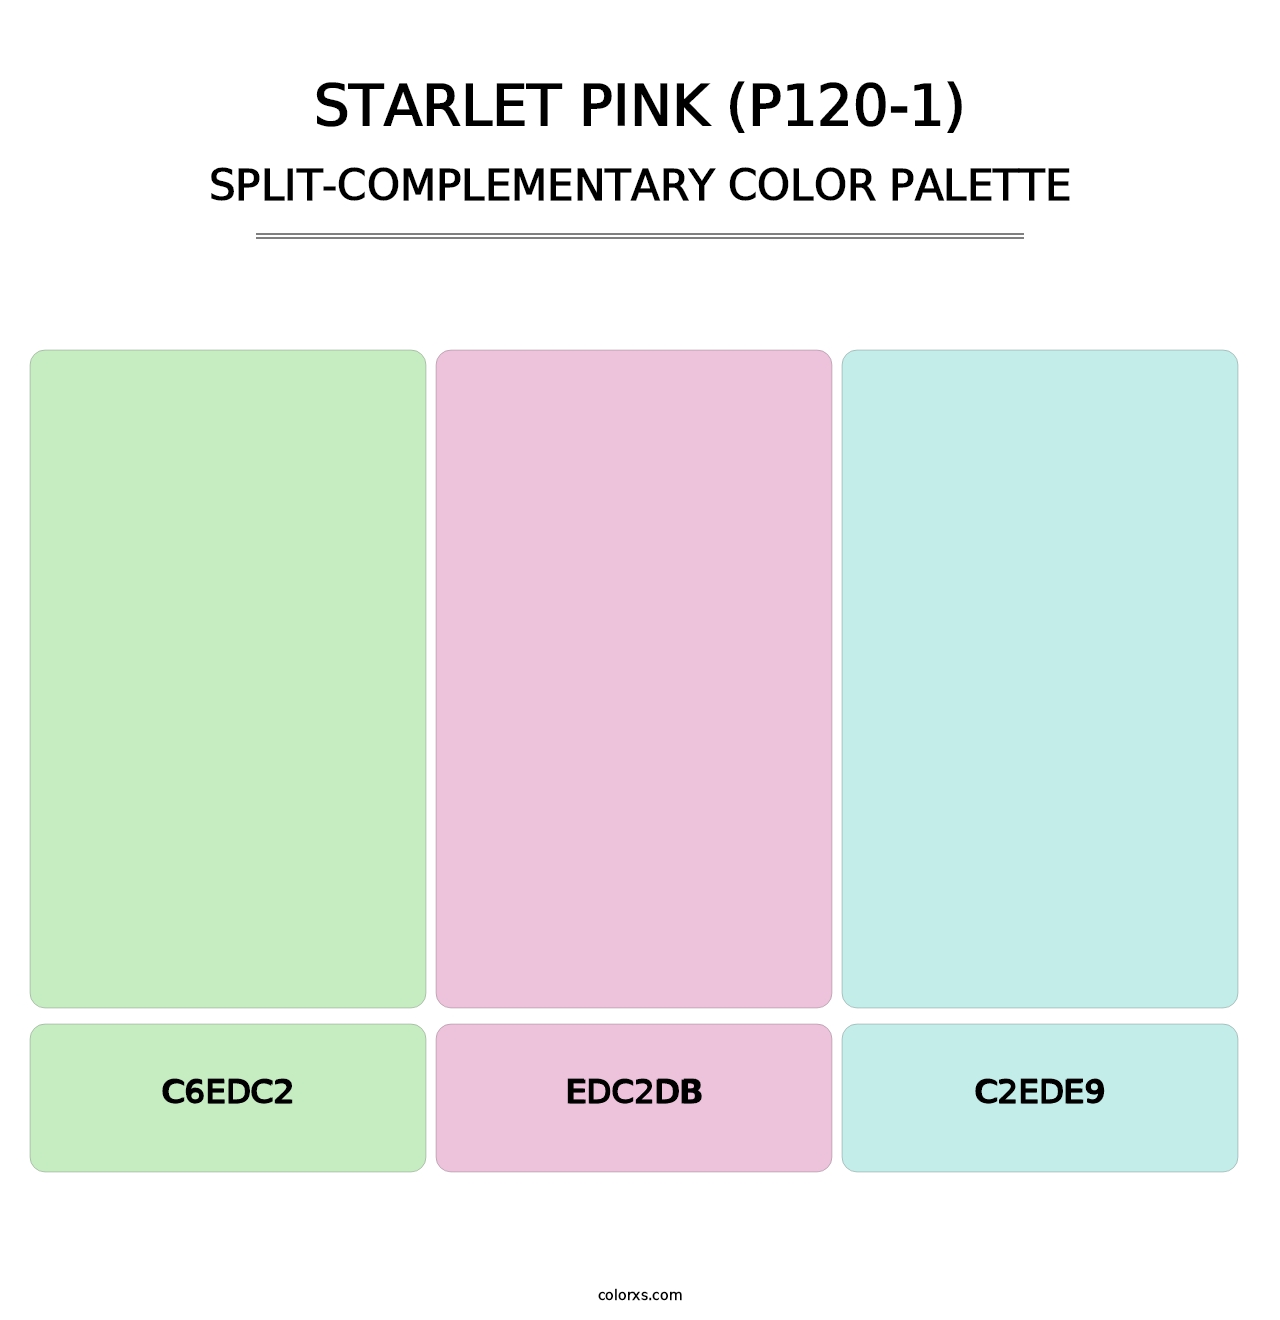 Starlet Pink (P120-1) - Split-Complementary Color Palette